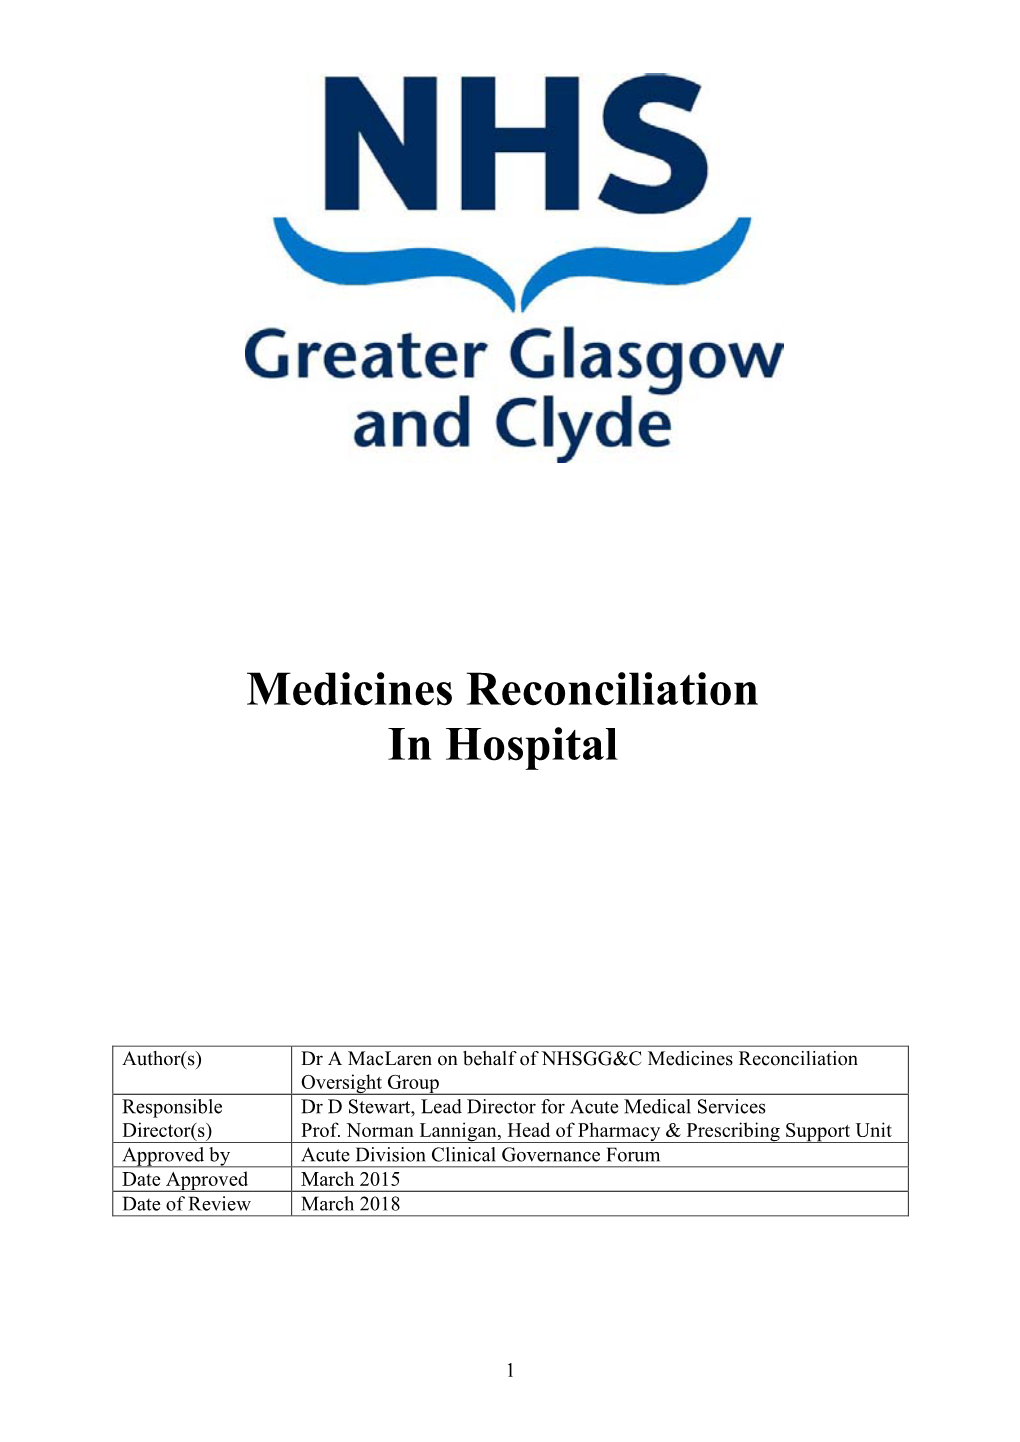 Medicines Reconciliation in Hospital